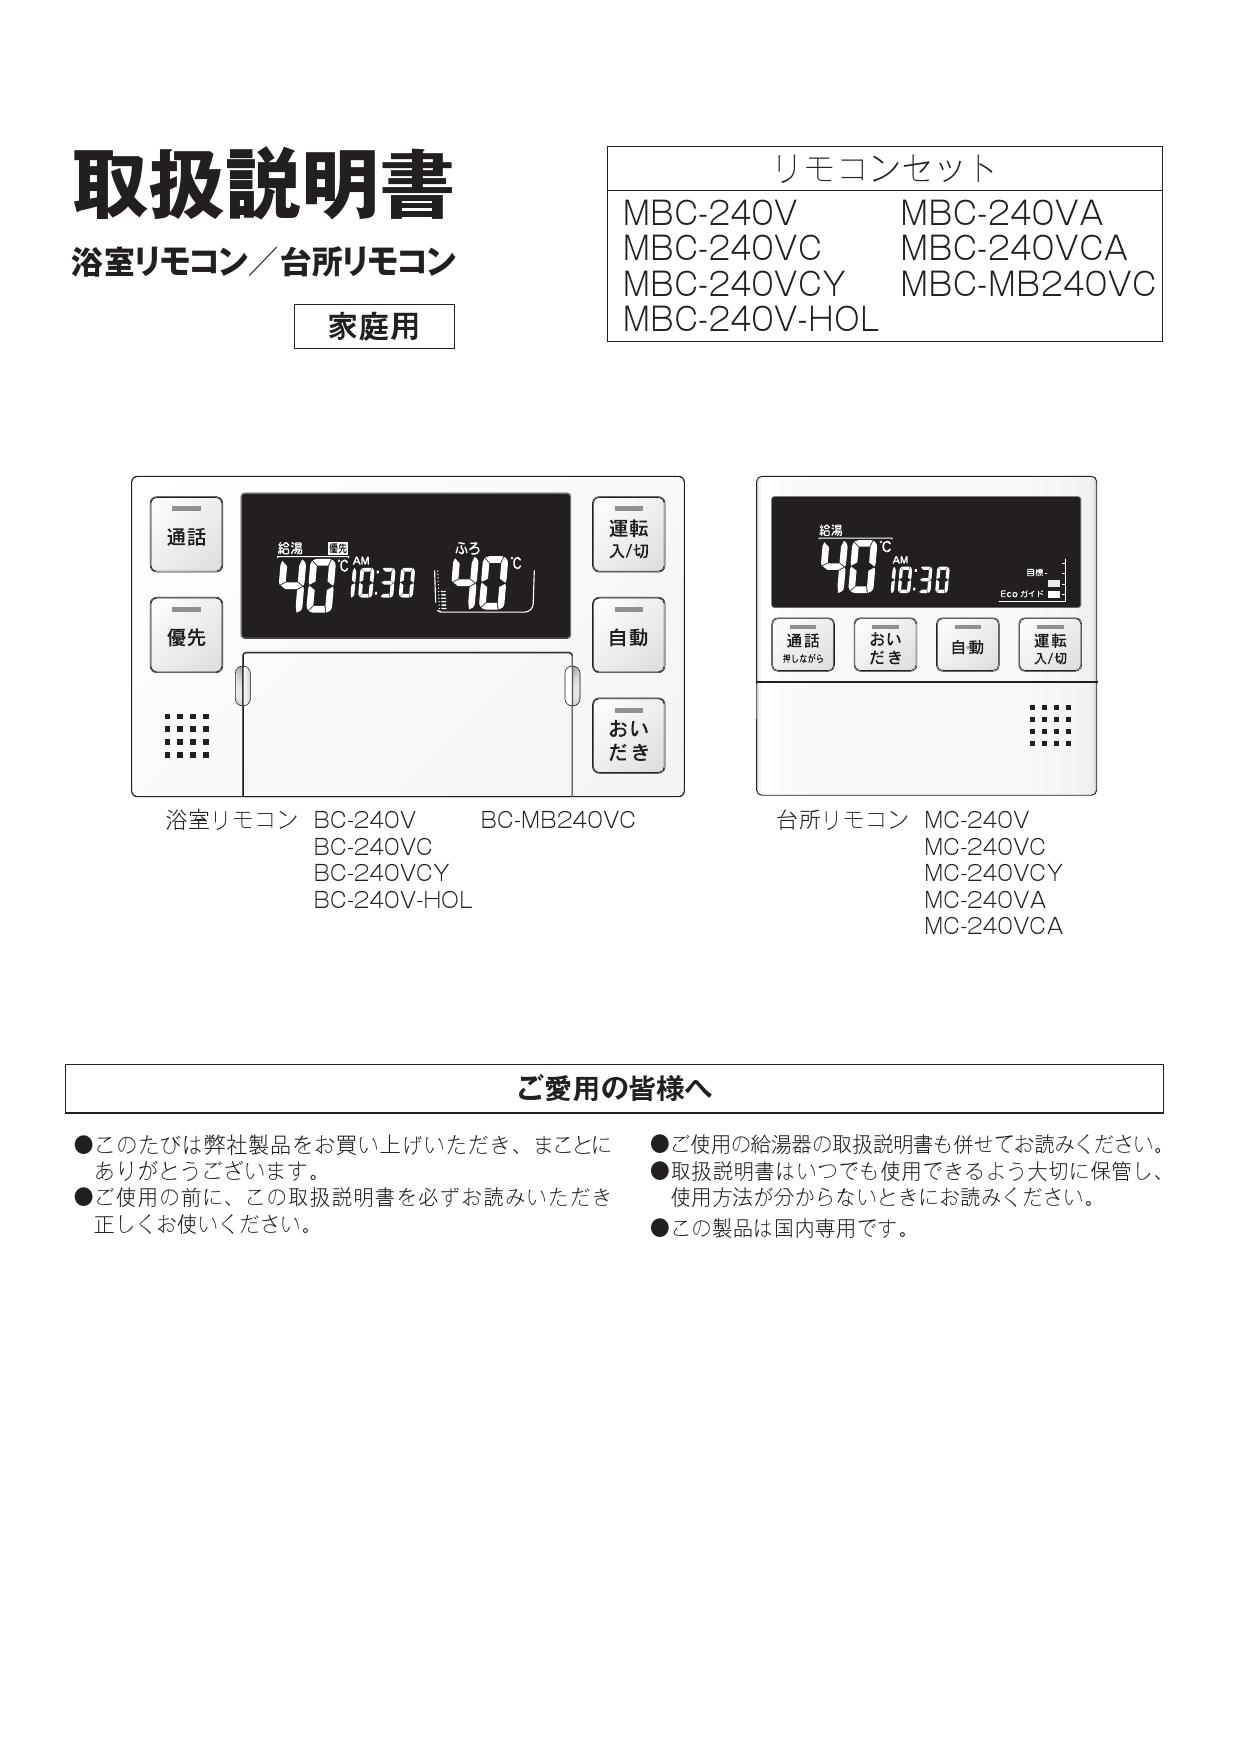 スーパーセール Rinnai MBC-240VC A 240シリーズ ガスふろ給湯器用リモコンセット 浴室リモコン 台所リモコン 